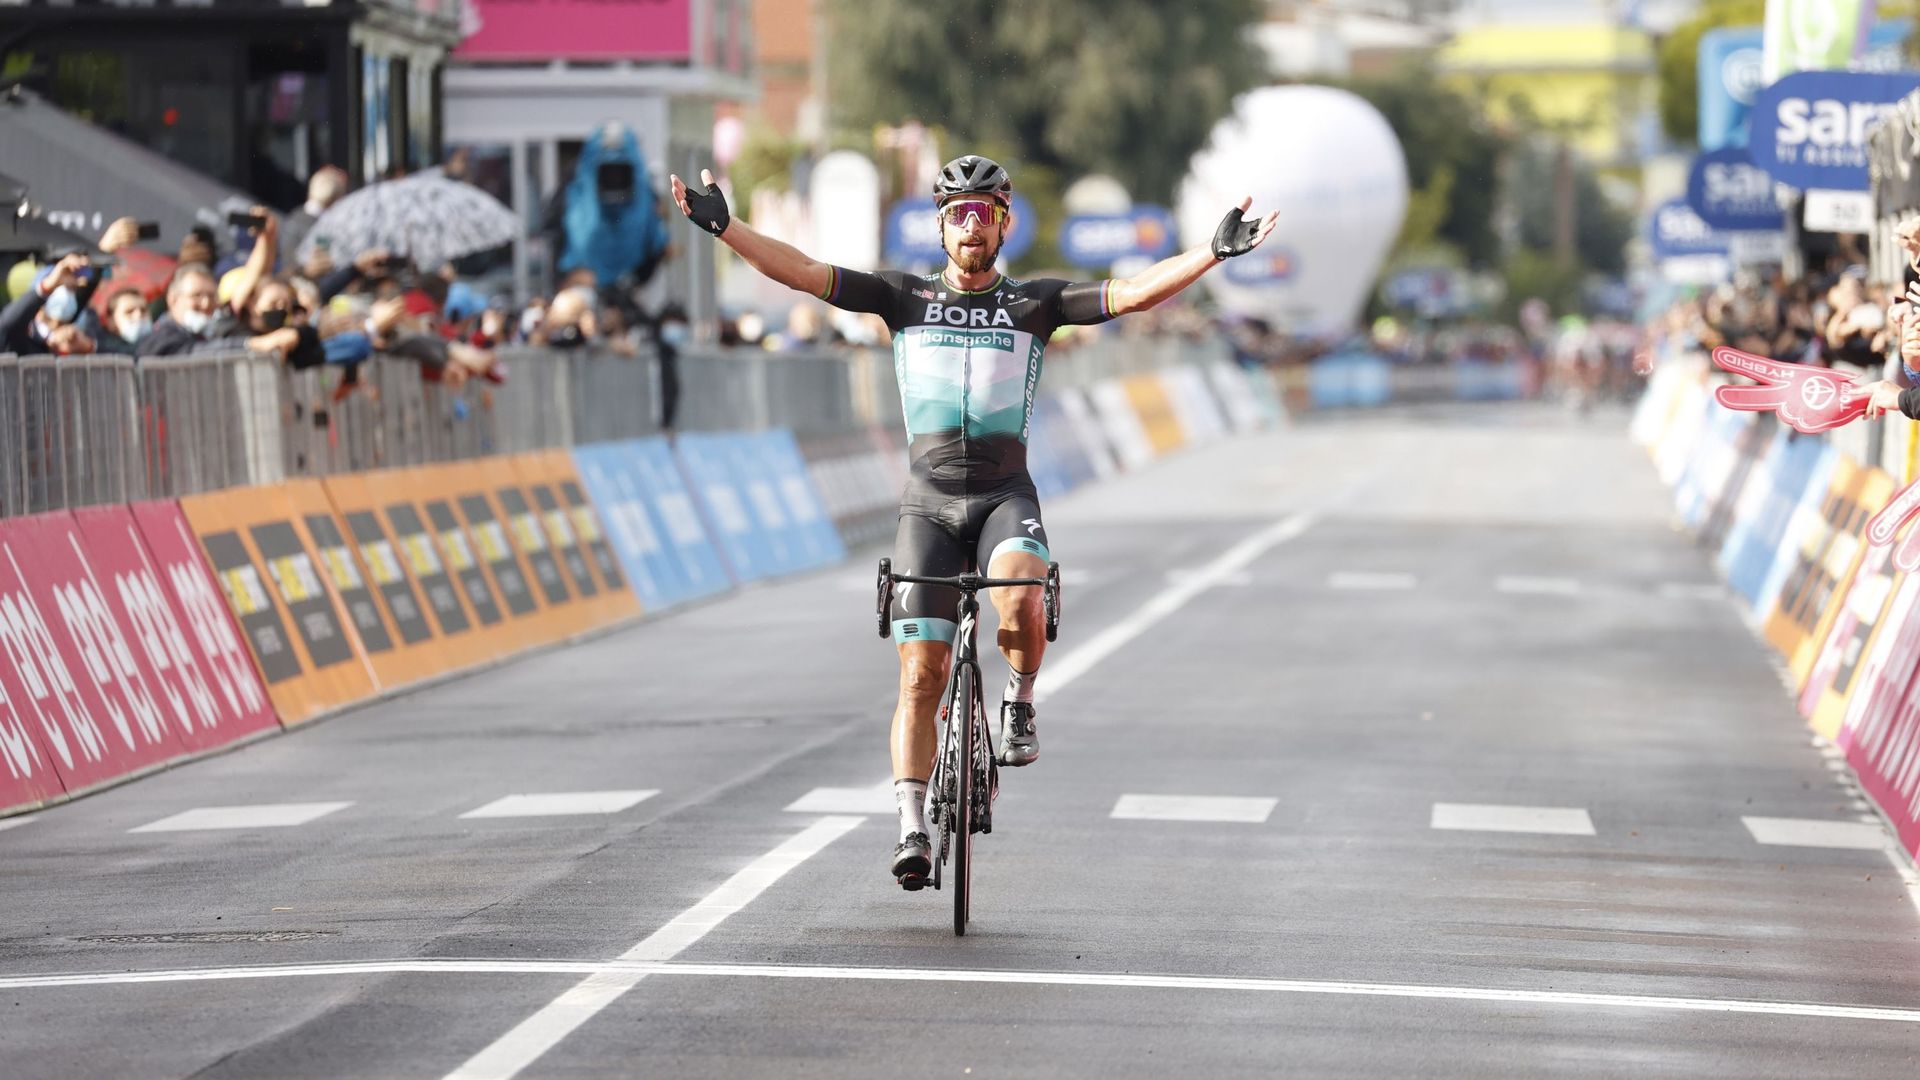 Tour d'Italie: Un redoutable Sagan renoue avec la victoire après 15 mois sans victoire